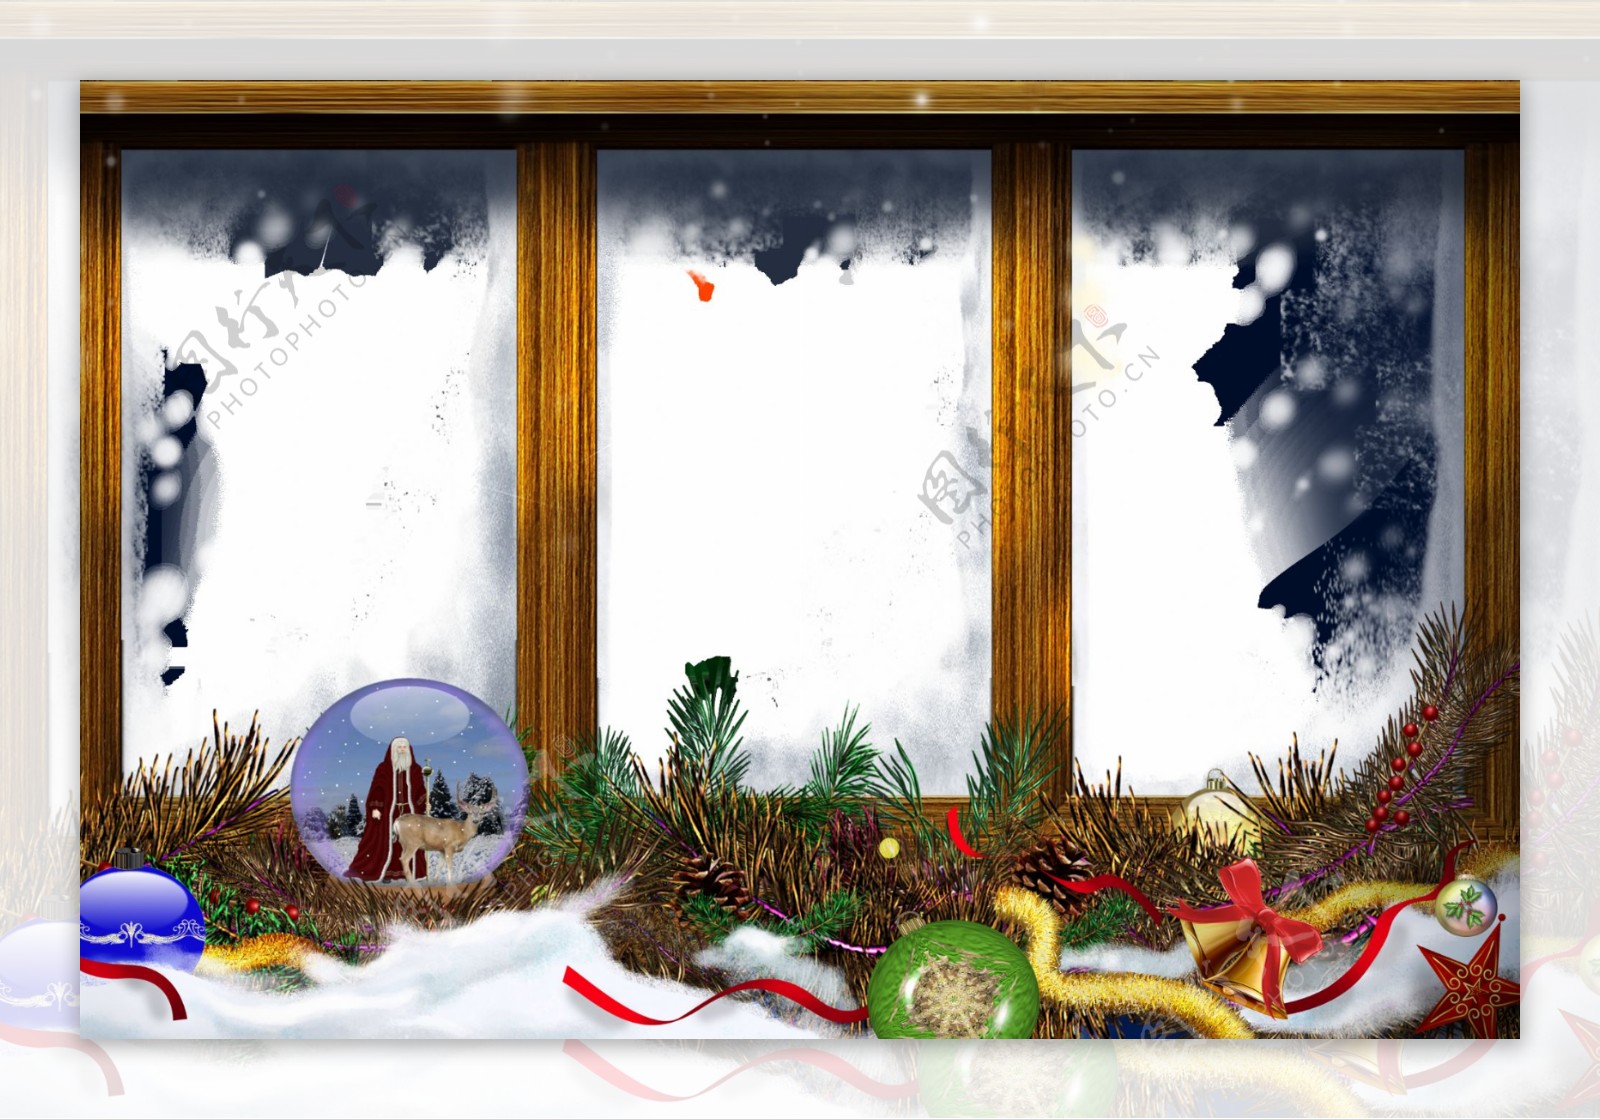 圣诞框架平面设计图图片